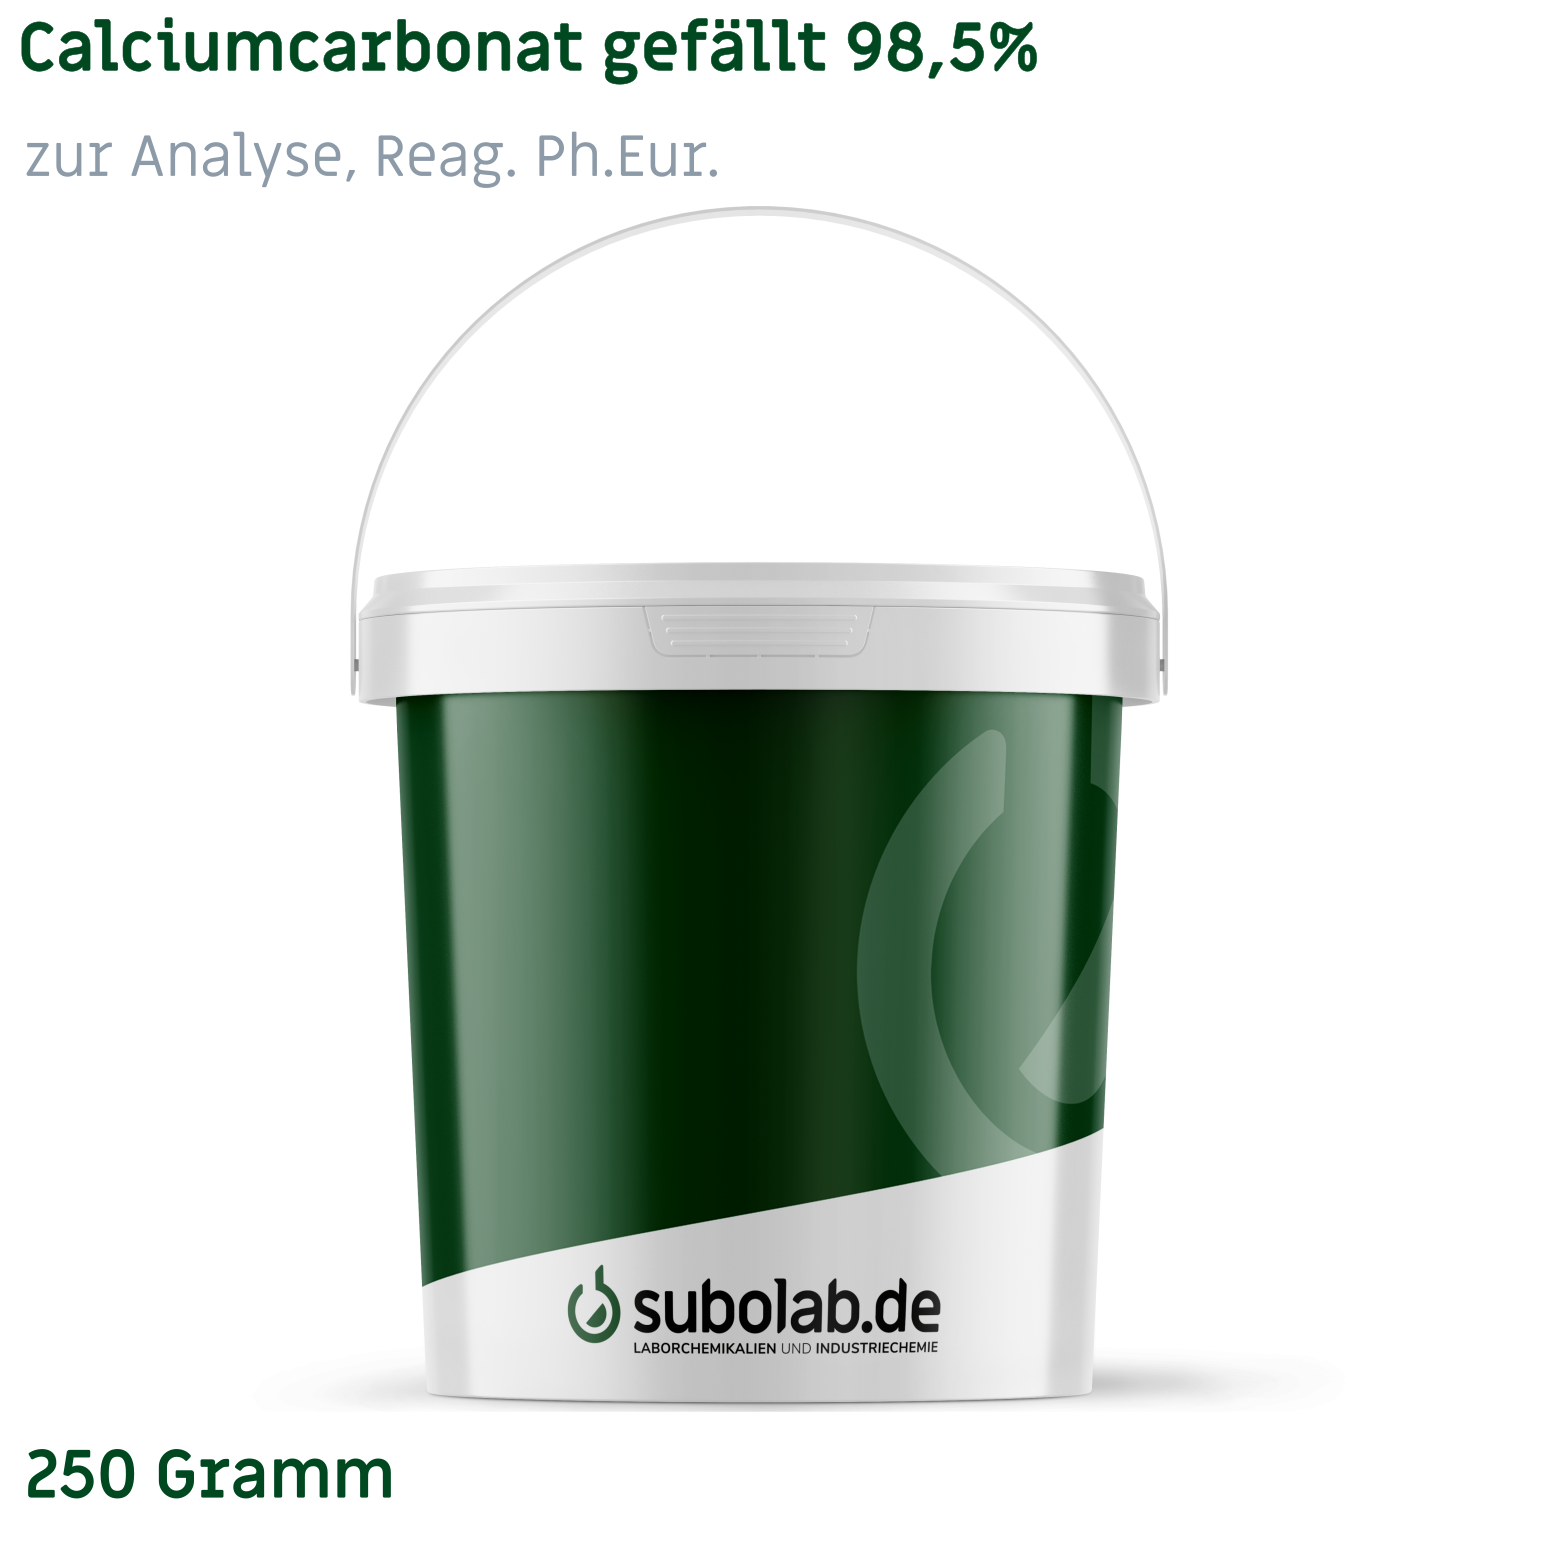 Bild von Calciumcarbonat gefällt 98,5% zur Analyse, Reag. Ph.Eur. (250 Gramm)